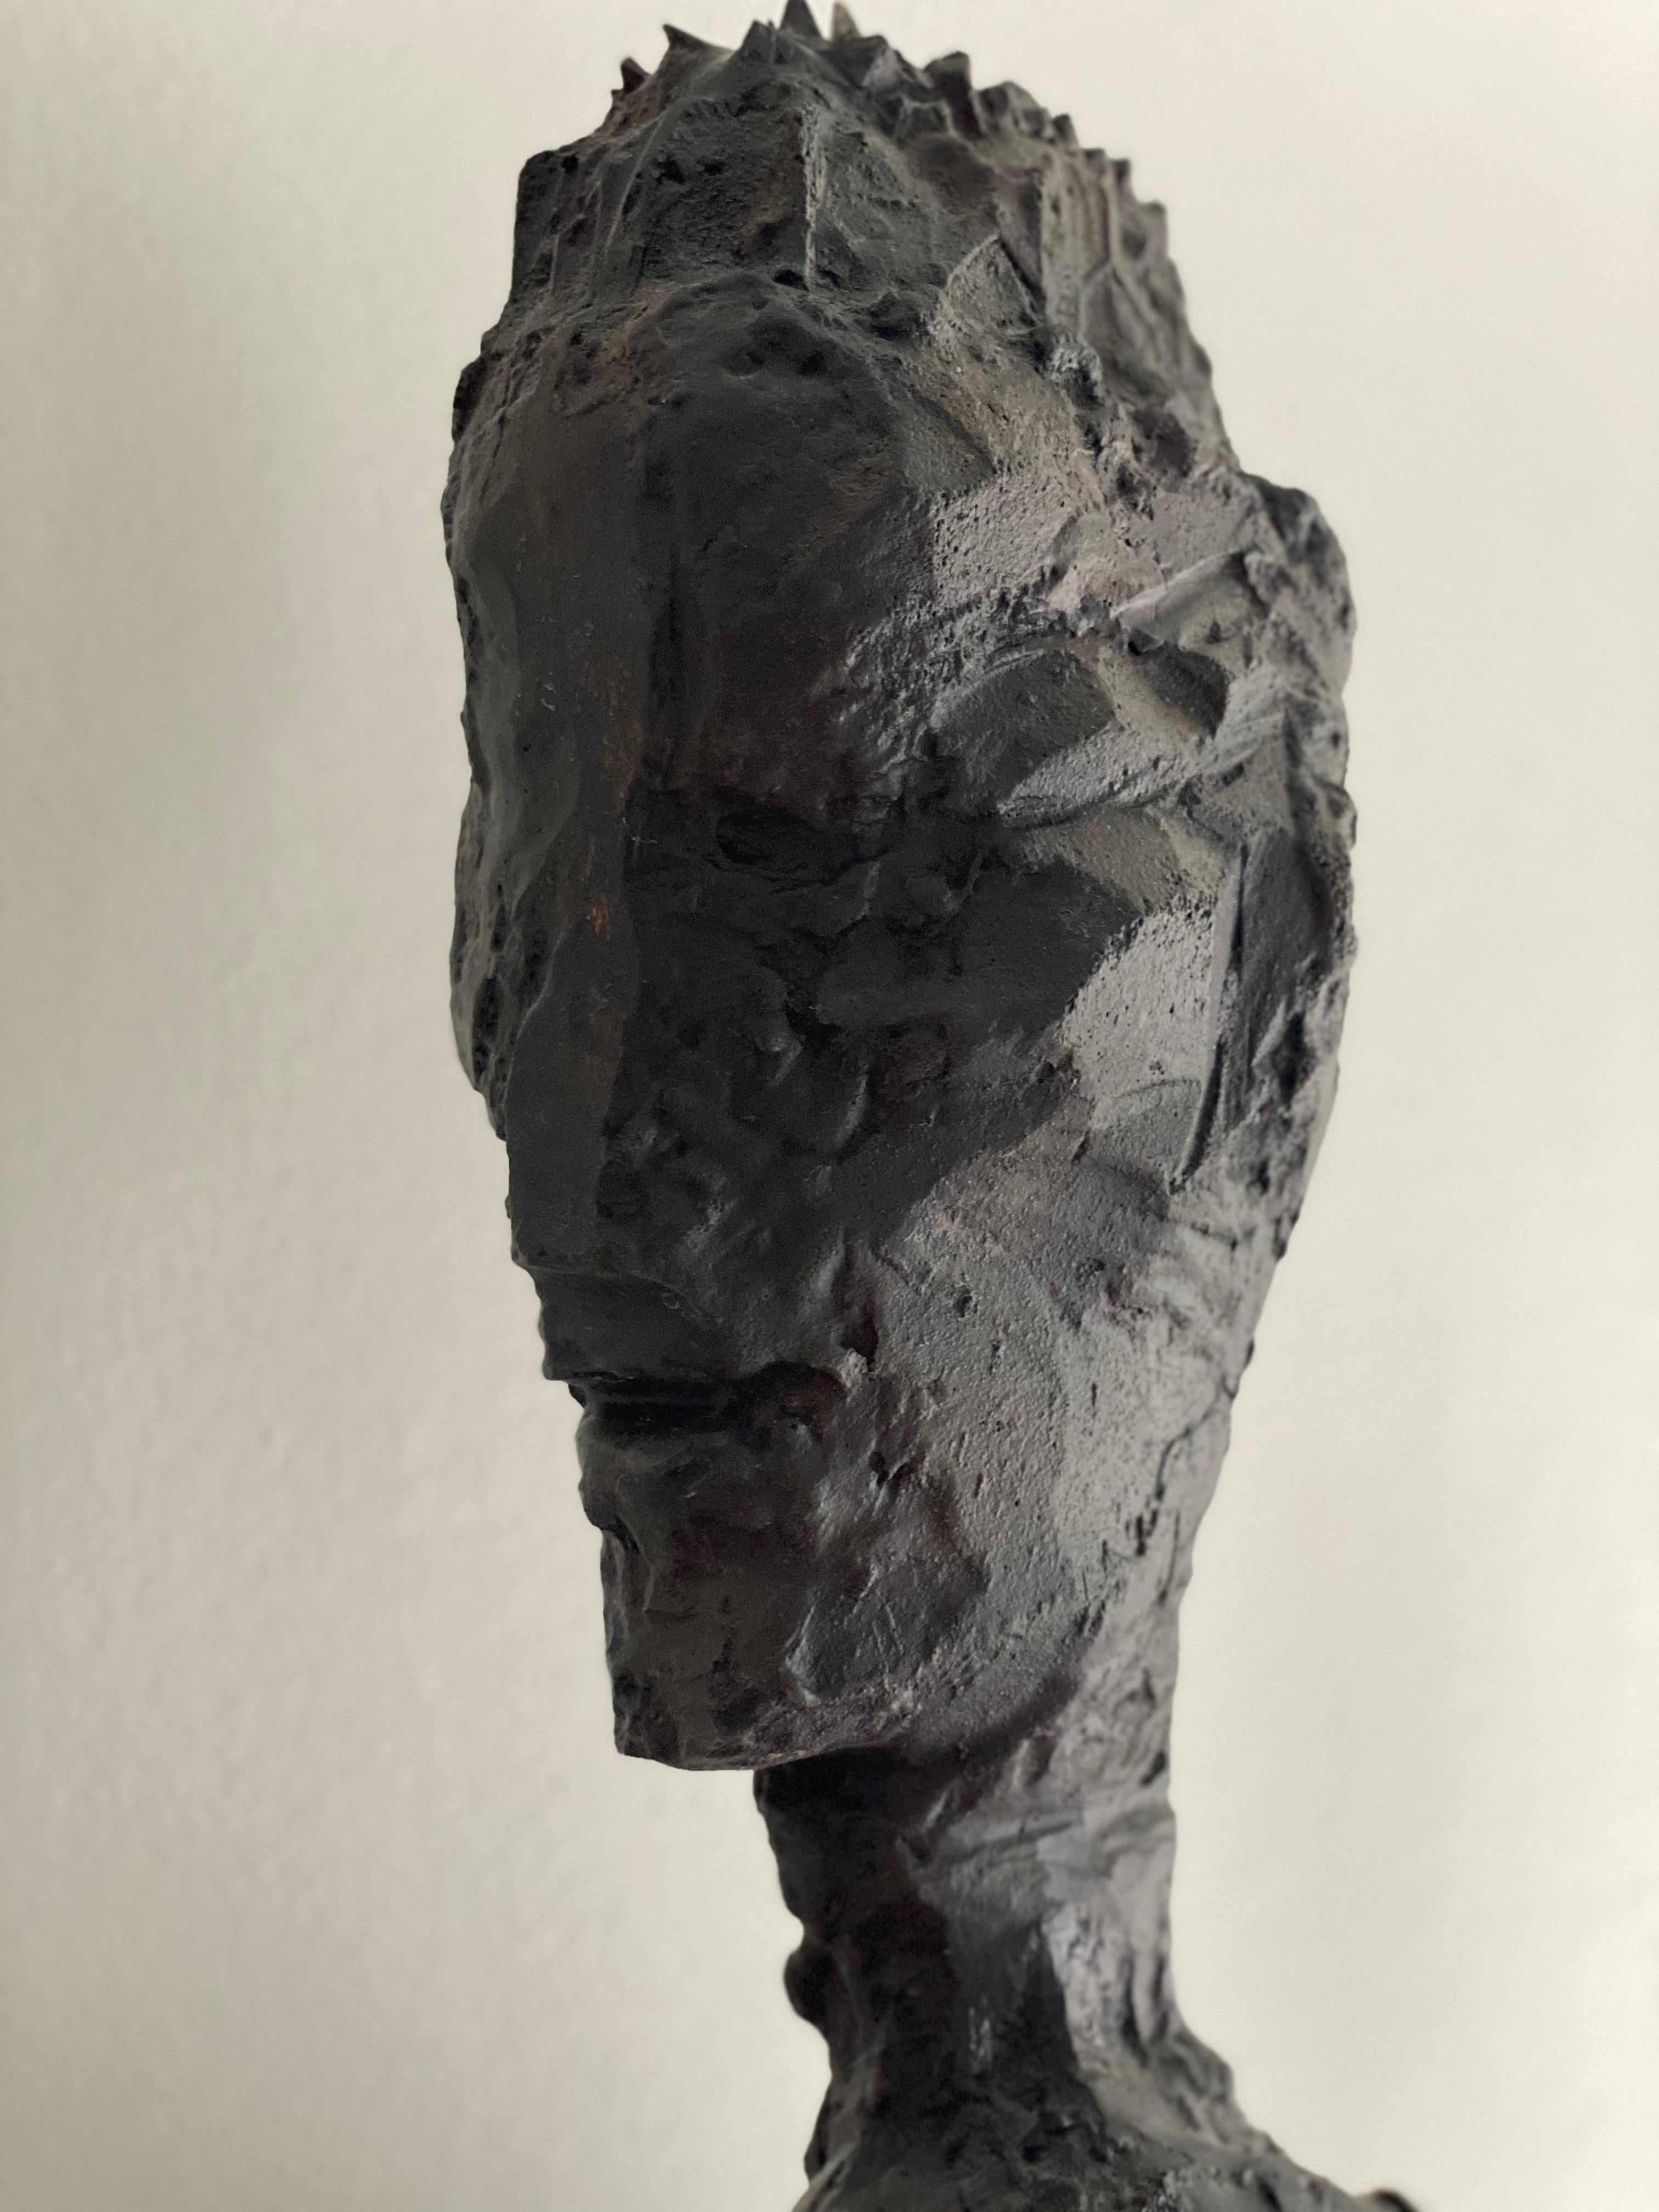 Une sculpture en bronze de John Brevard représente un homme dans un profond état de contemplation, debout comme en prière. Son attention est entièrement tournée vers le téléphone portable qu'il tient devant lui, symbolisant l'attachement du monde